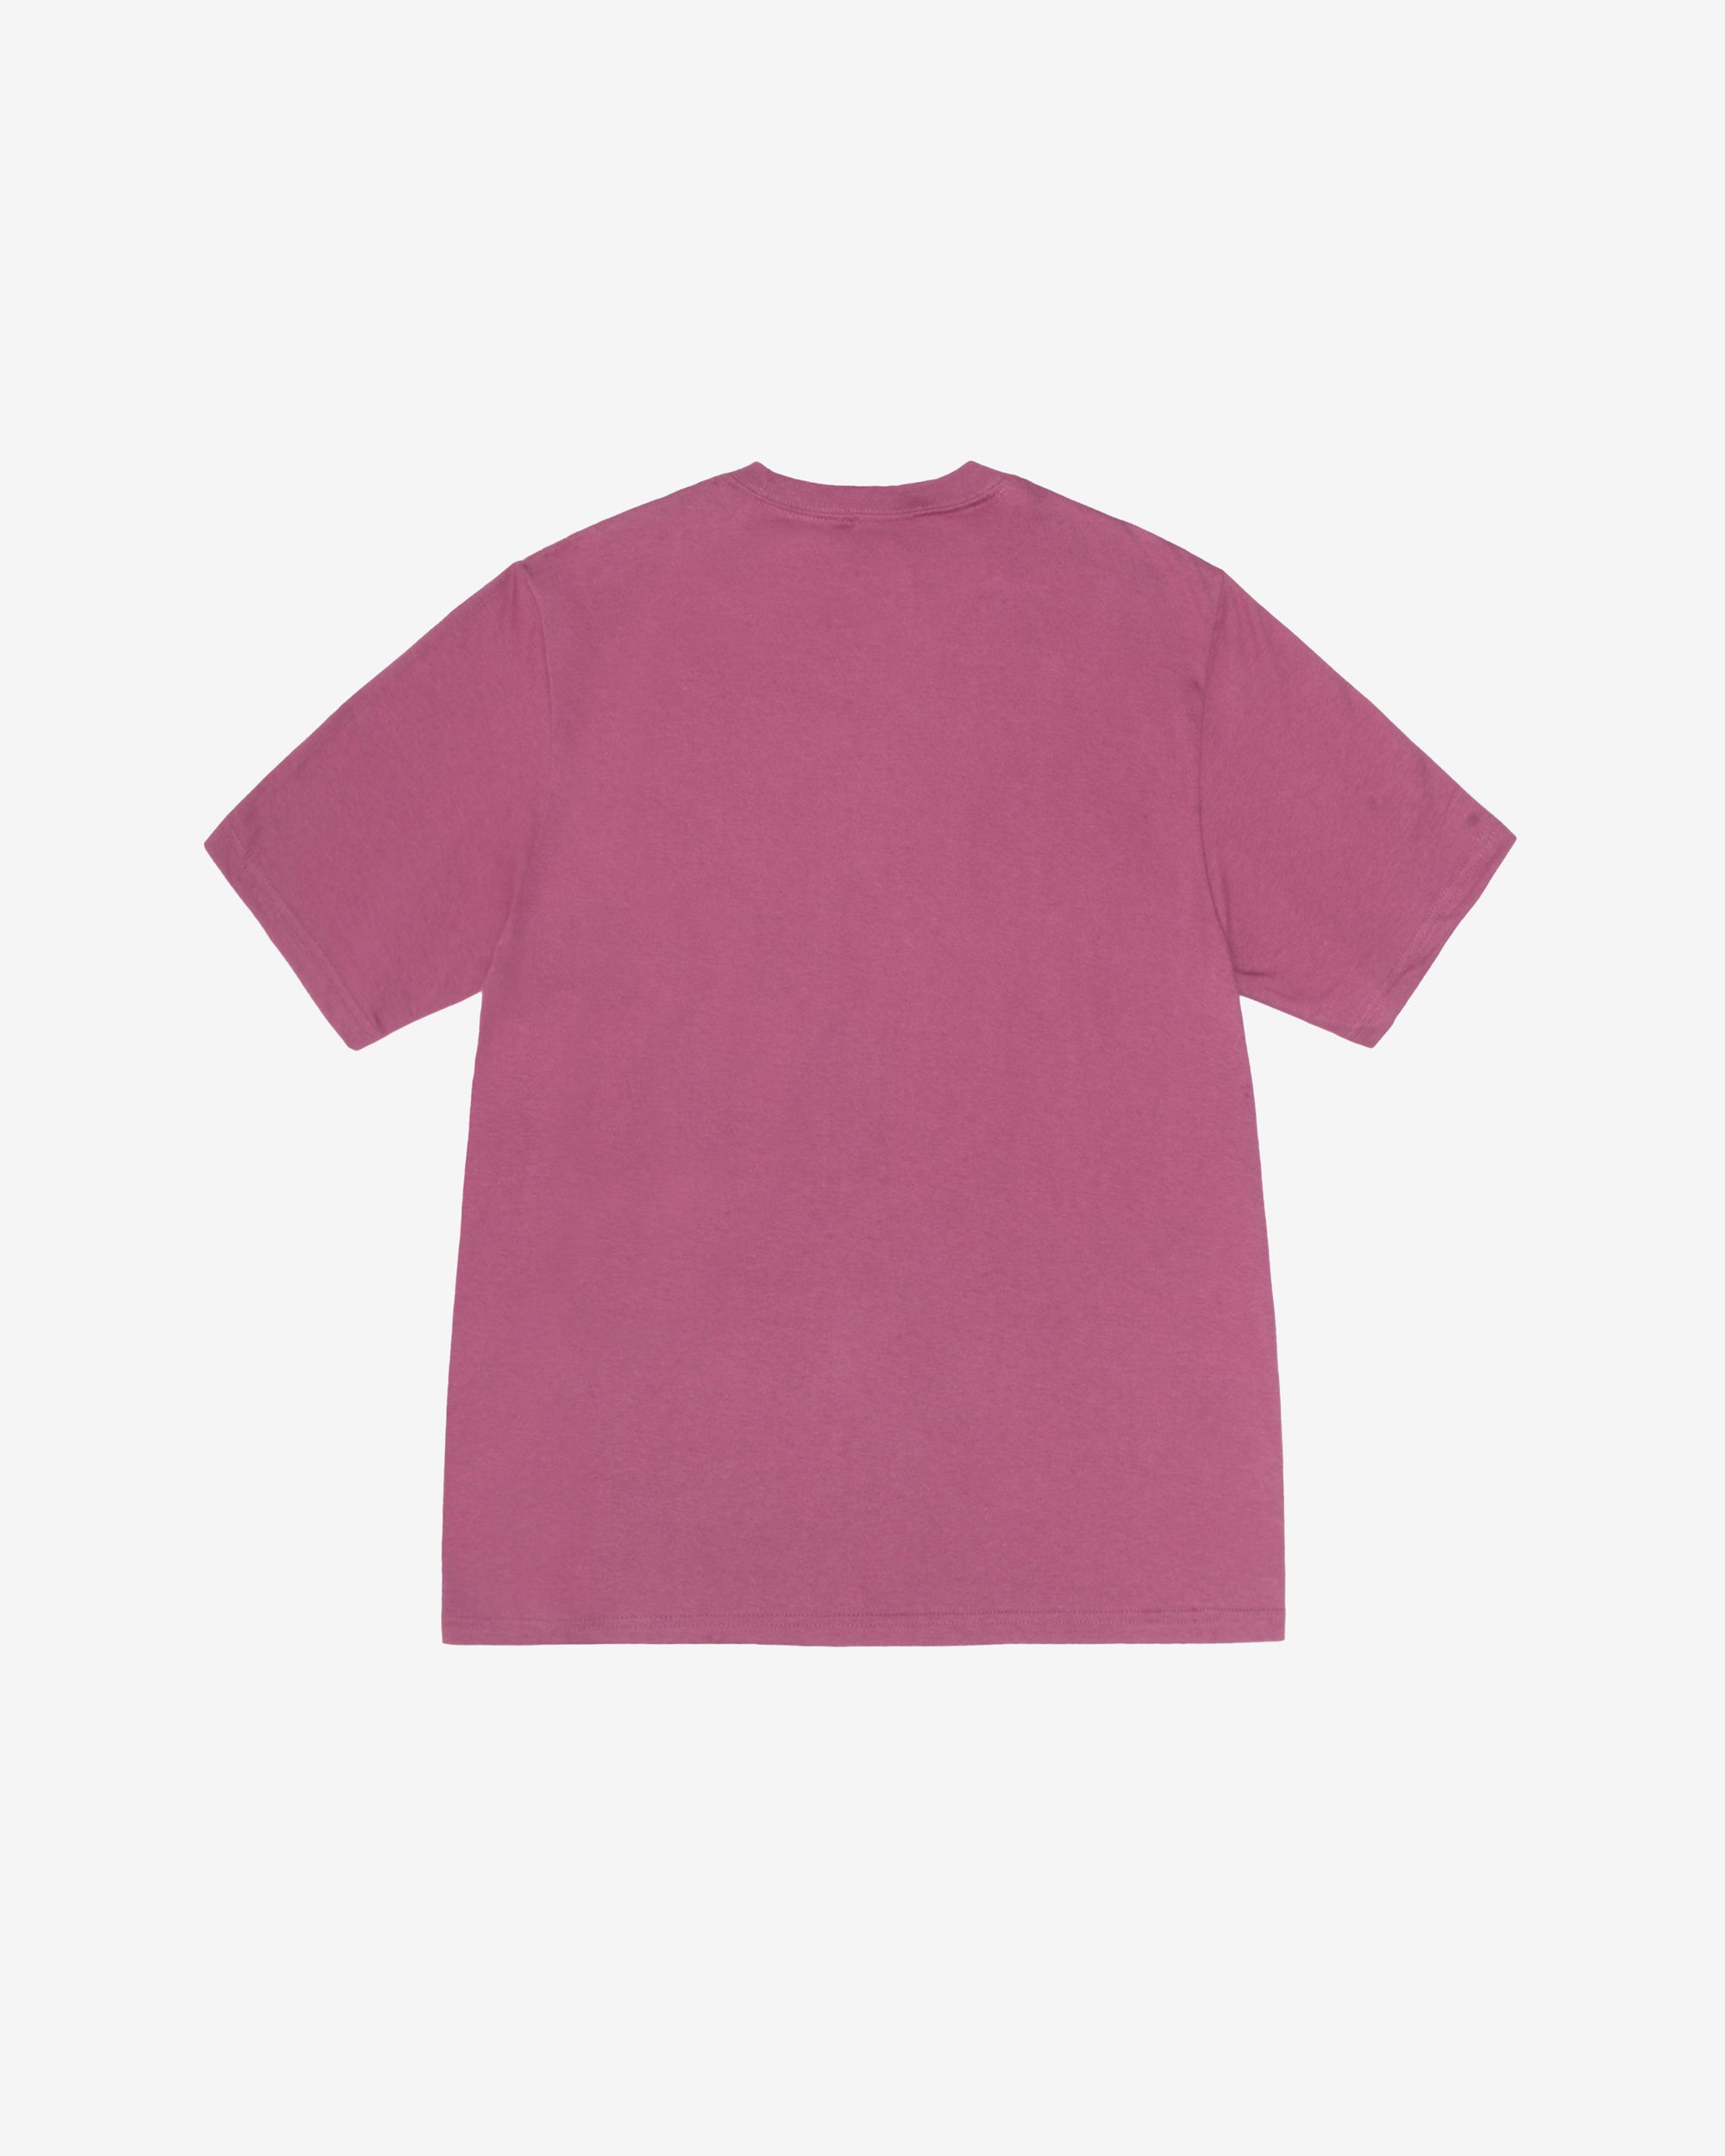 Stüssy - Men's Nurture T-Shirt - (Berry) – DSMNY E-SHOP